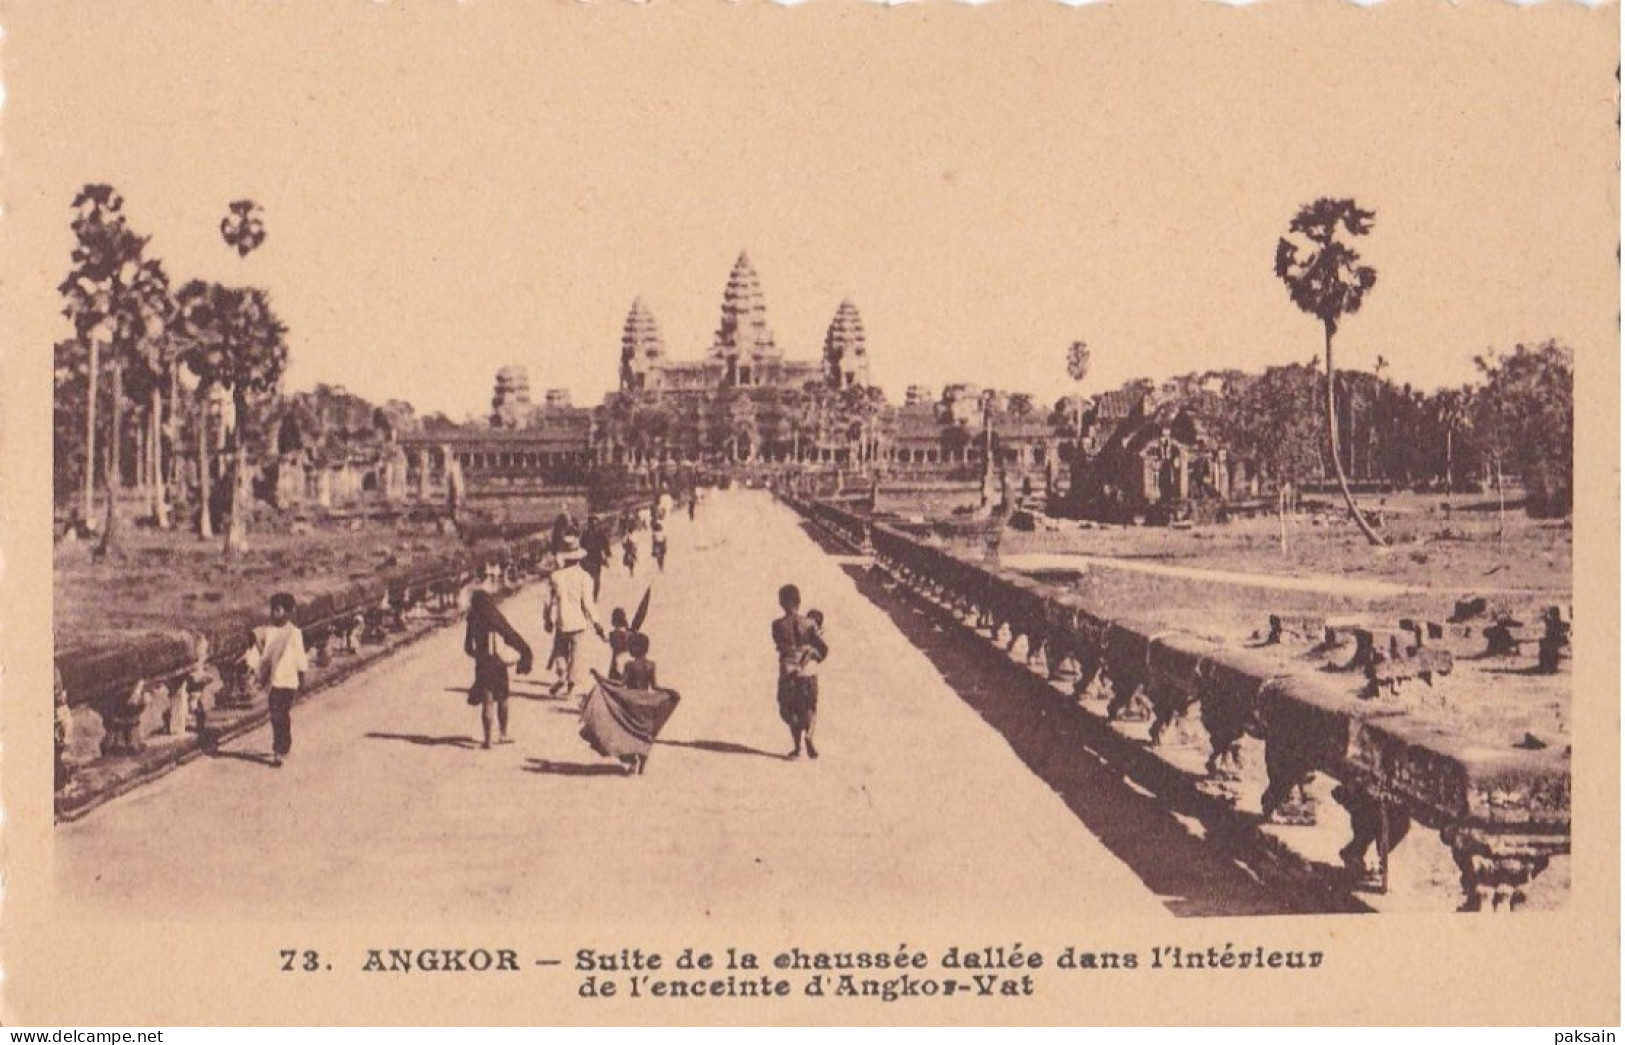 ANGKOR - Suite De La Chaussée Dallée Dans L'intérieur De L'enceinte D'Angkor-Vat Paulussen N° 73 CAMBODGE Indochine Asie - Kambodscha